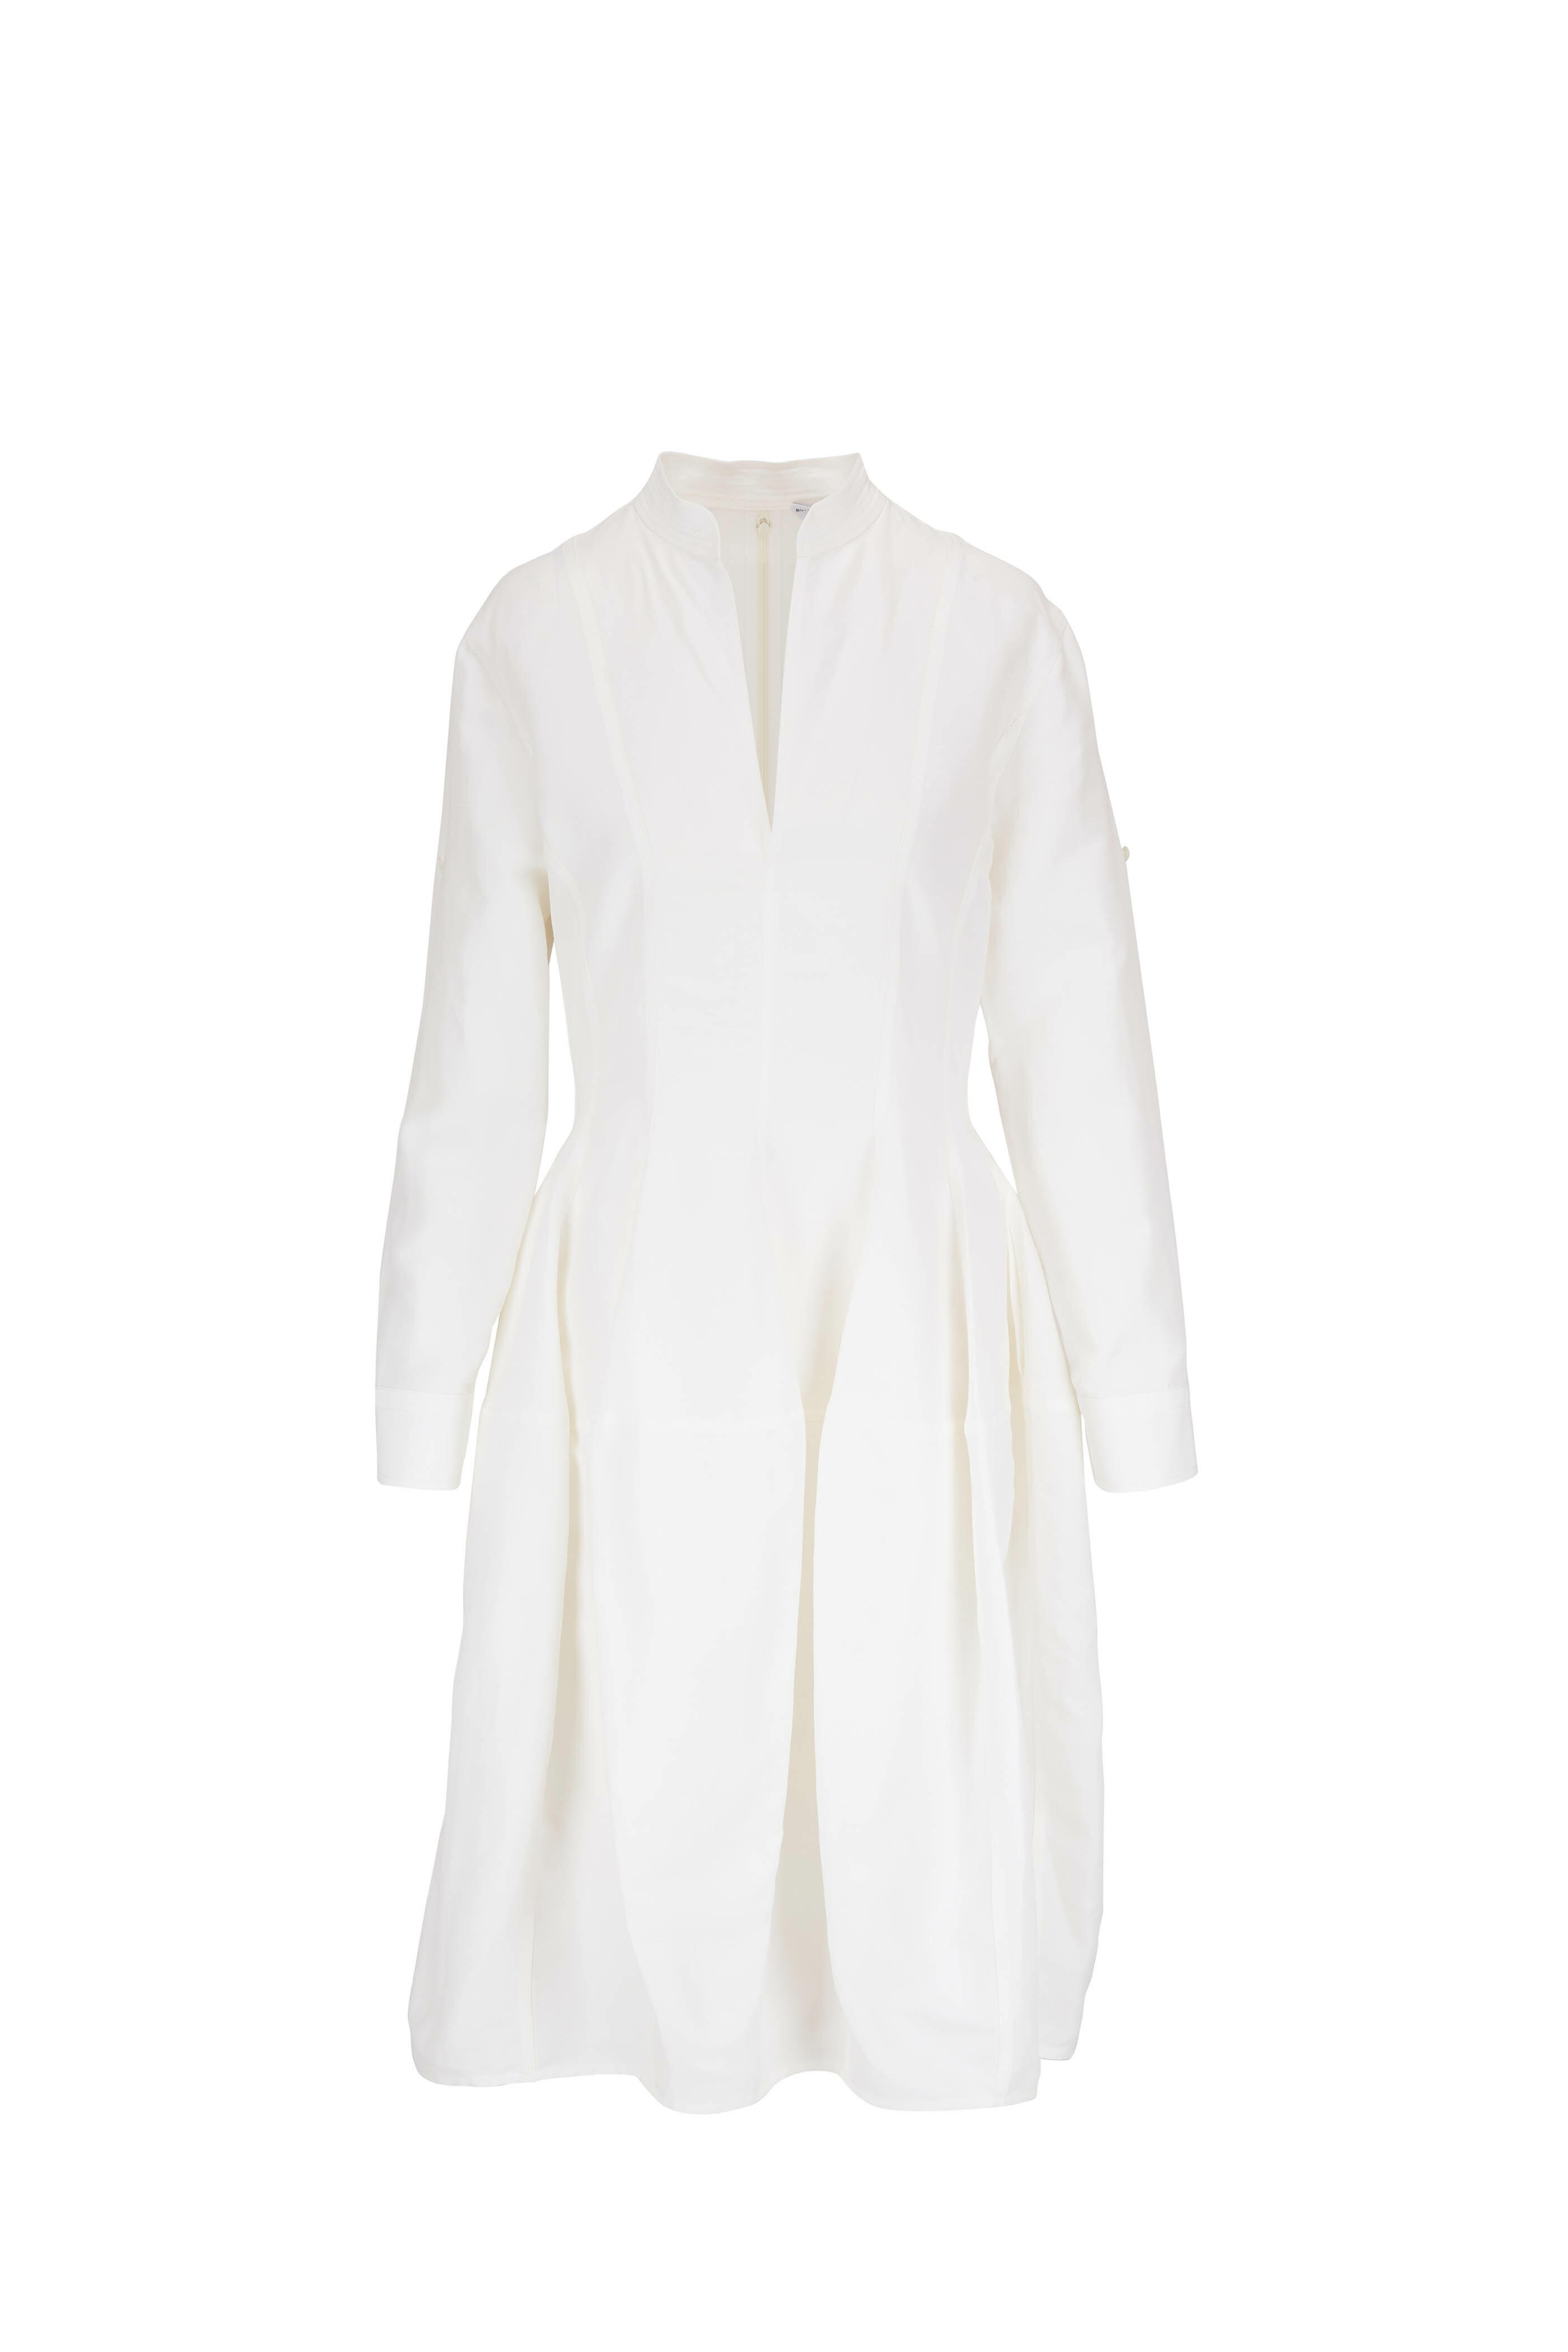 Bottega Veneta - Fluid Chalk White Viscose & Linen Midi Dress